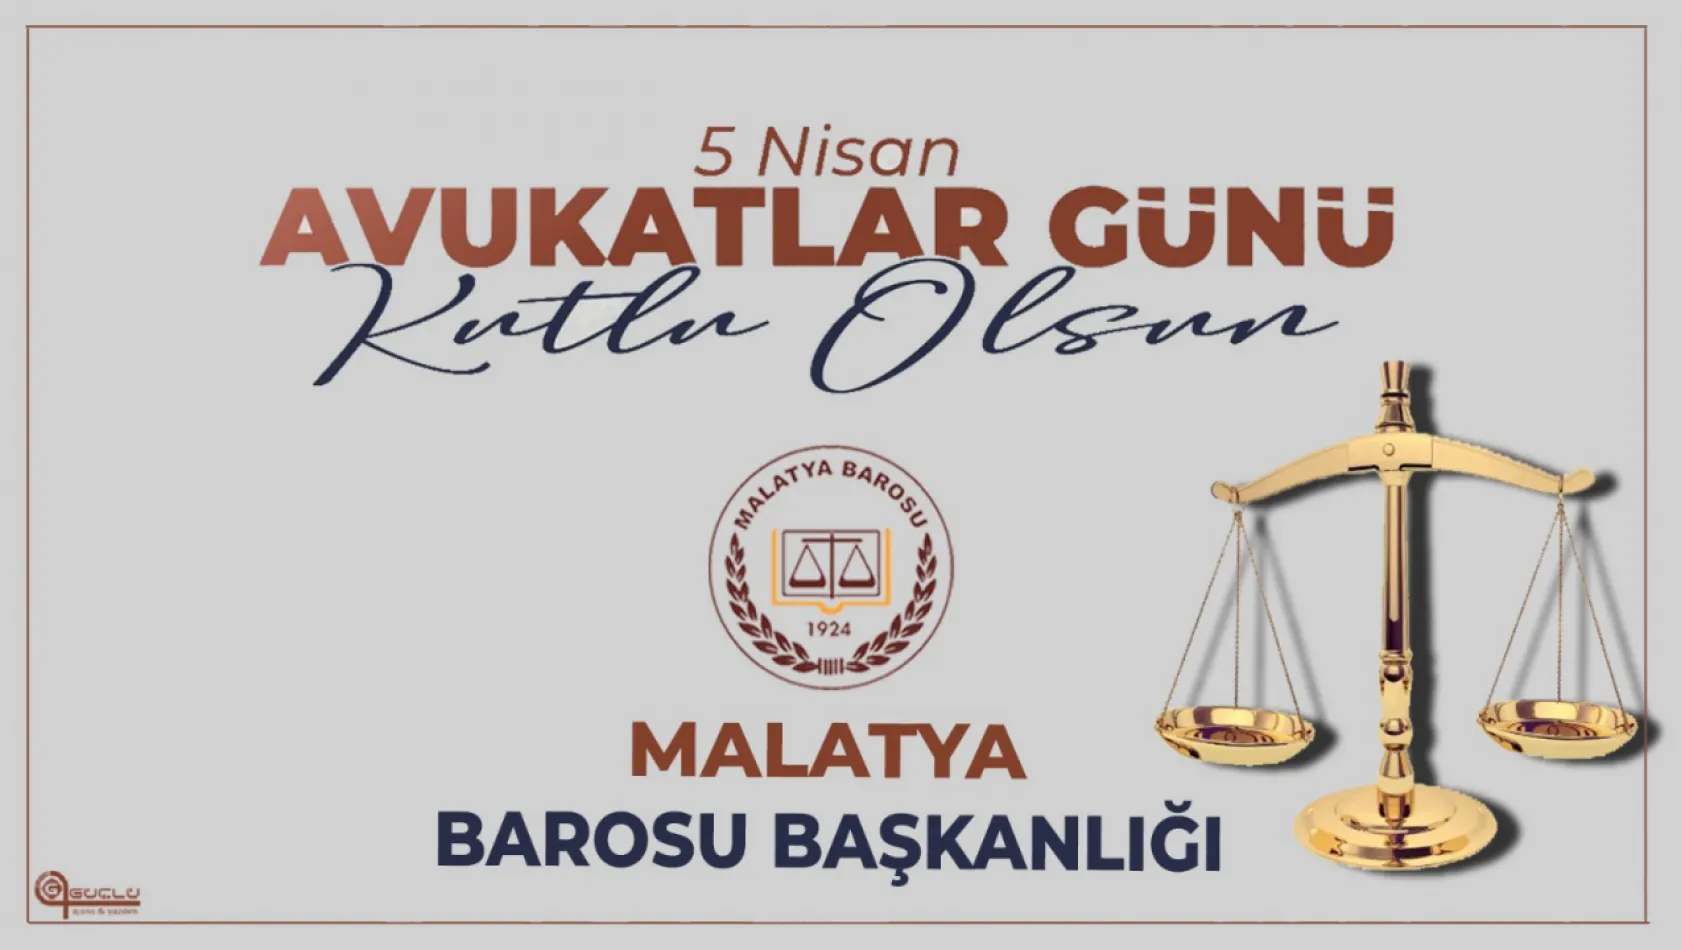 5 Nisan Avukatlar Gününü Malatya Barosu adına kutluyoruz.